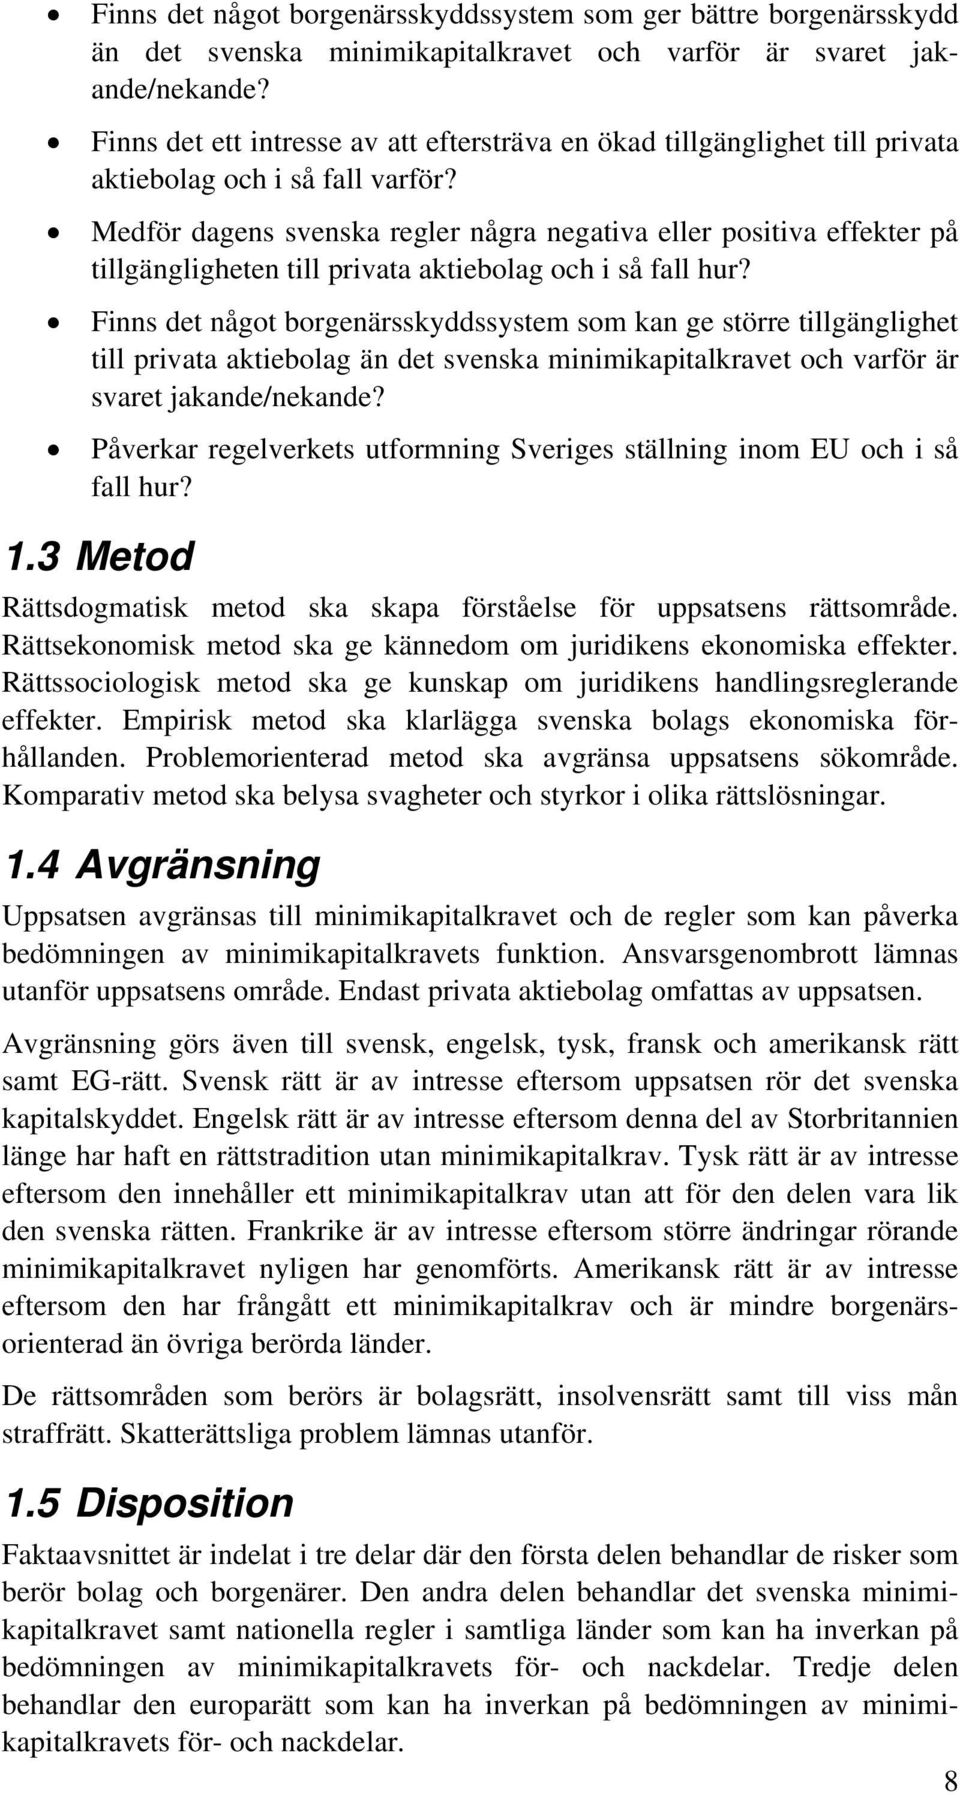 Medför dagens svenska regler några negativa eller positiva effekter på tillgängligheten till privata aktiebolag och i så fall hur?